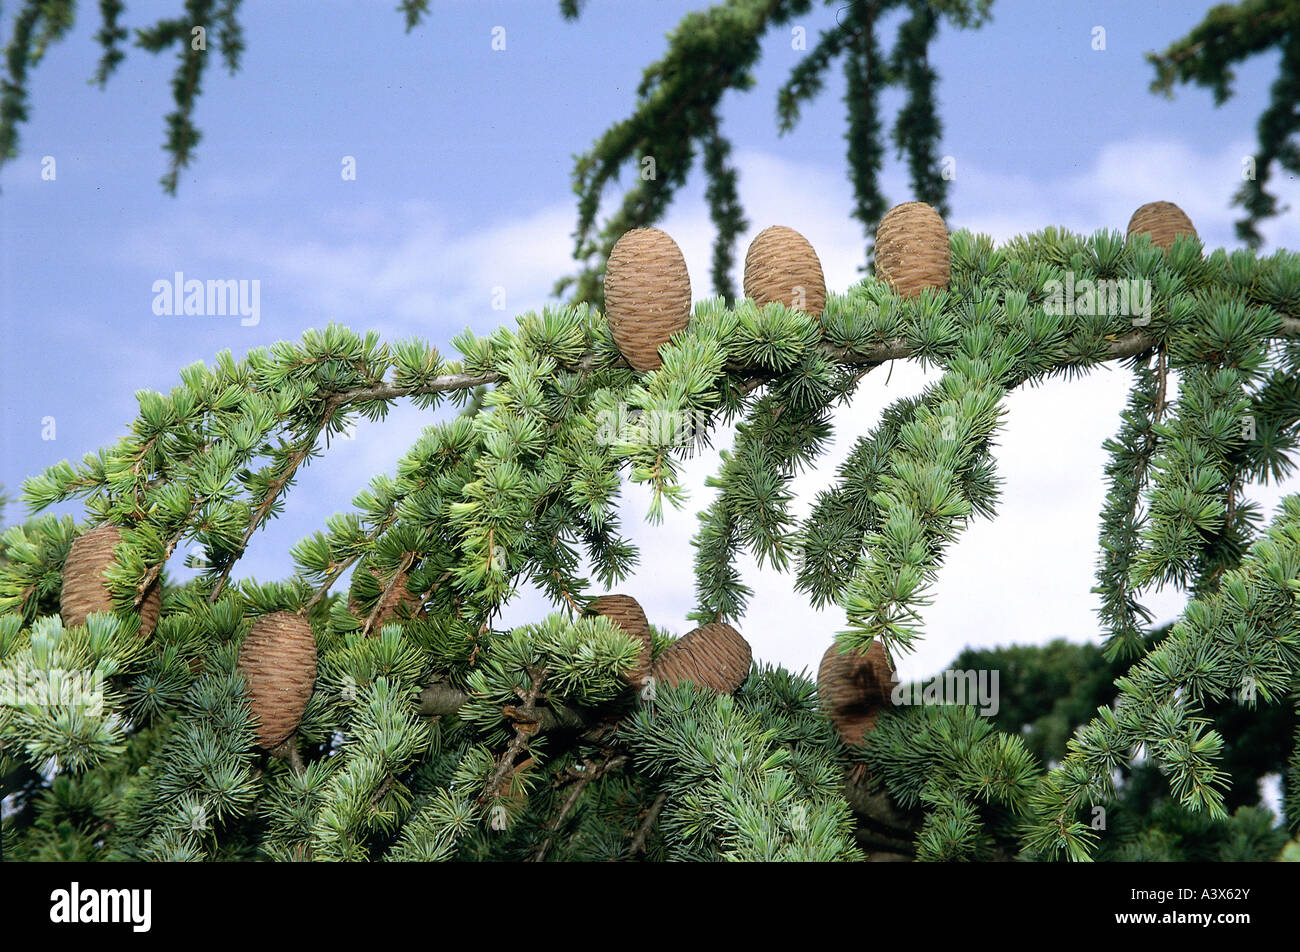 botany, Cedar, (Cedrus), Lebanon Cedar, (Cedrus libani), cones on branch, tree, cone, Pinaceae, Pinaophyta, Coniferales, green, Stock Photo